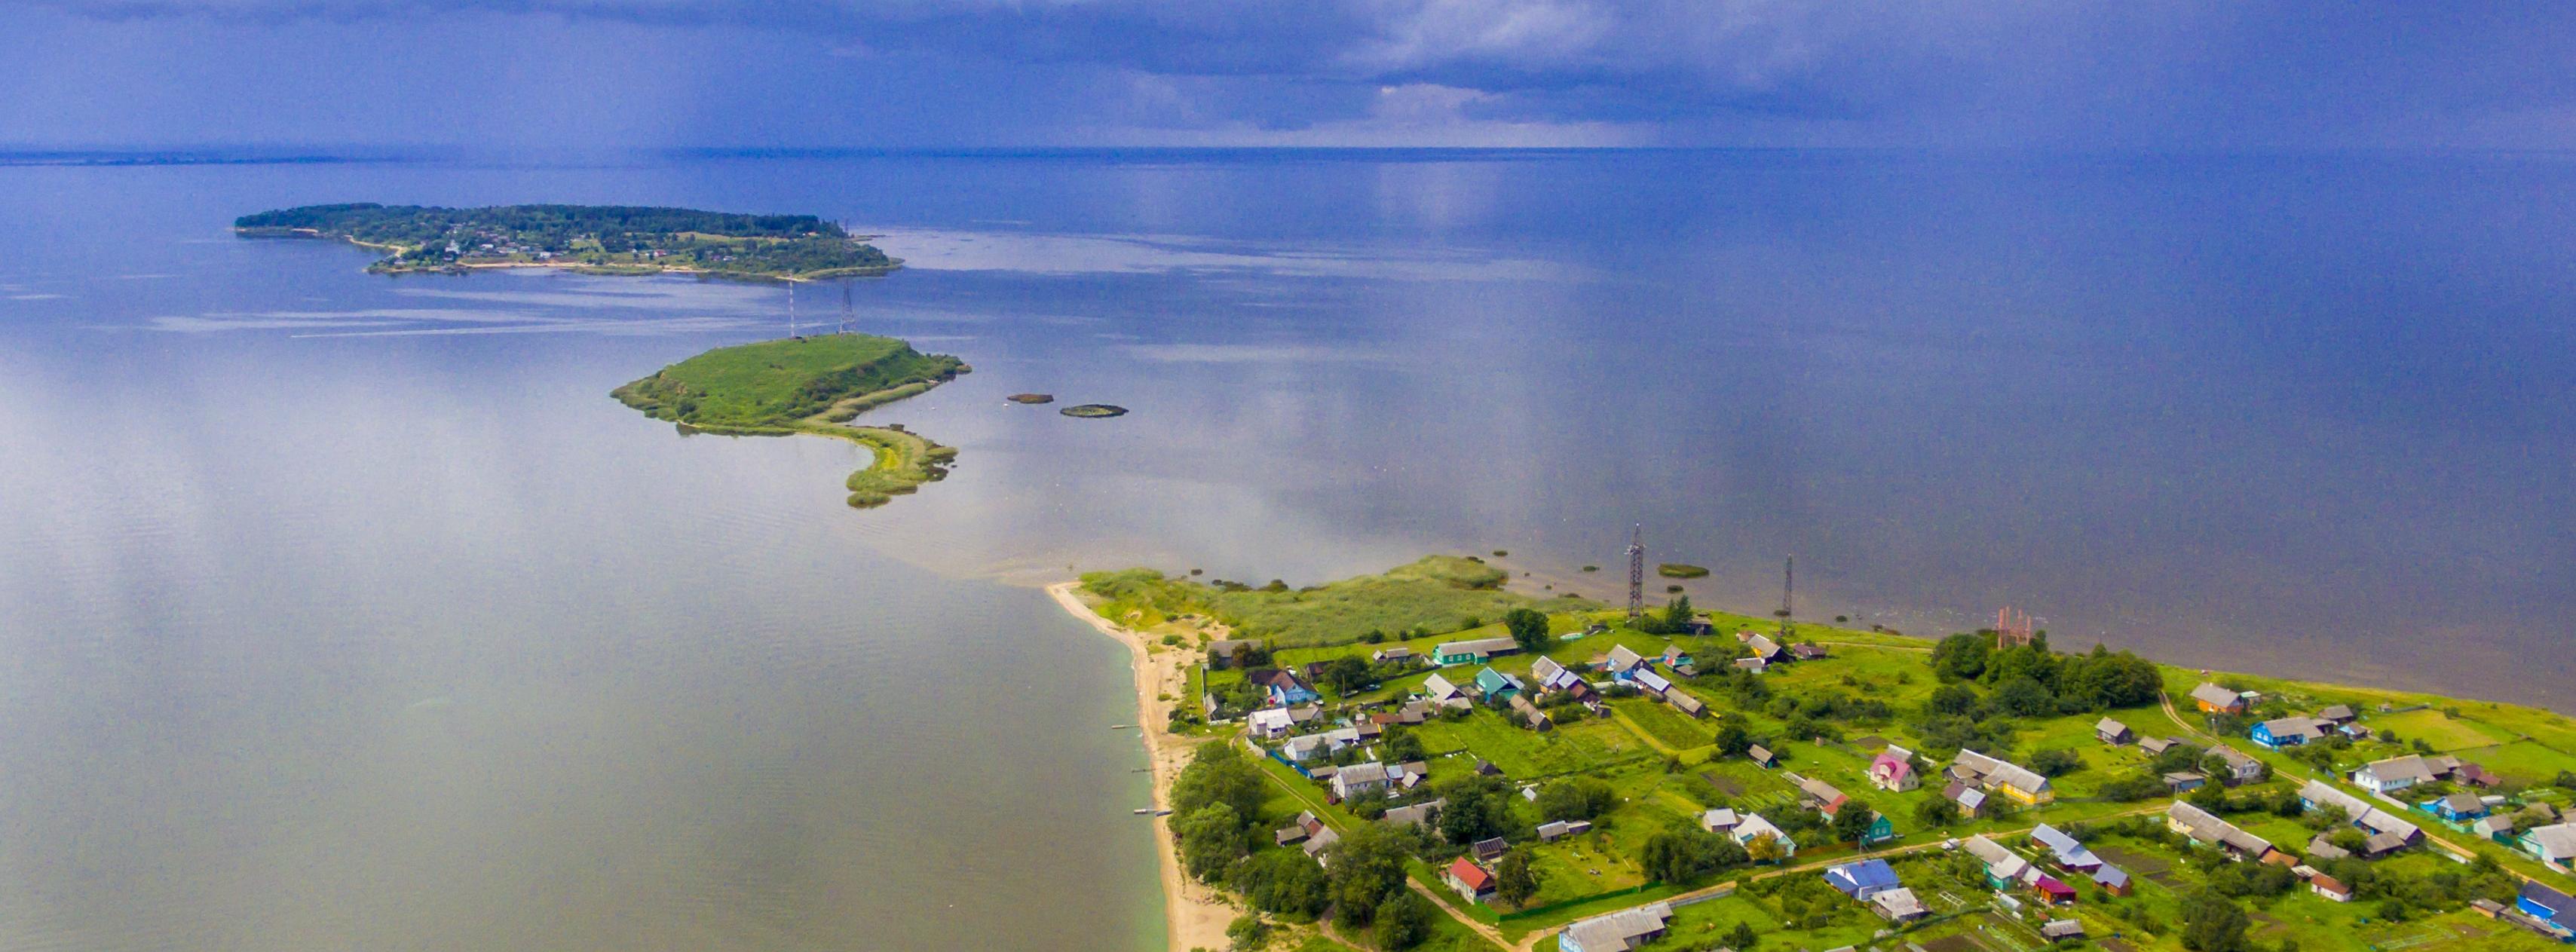 Однодневная экскурсия с прогулкой на катере «Талабские острова: путешествие на Псковское море» со скидкой 25%